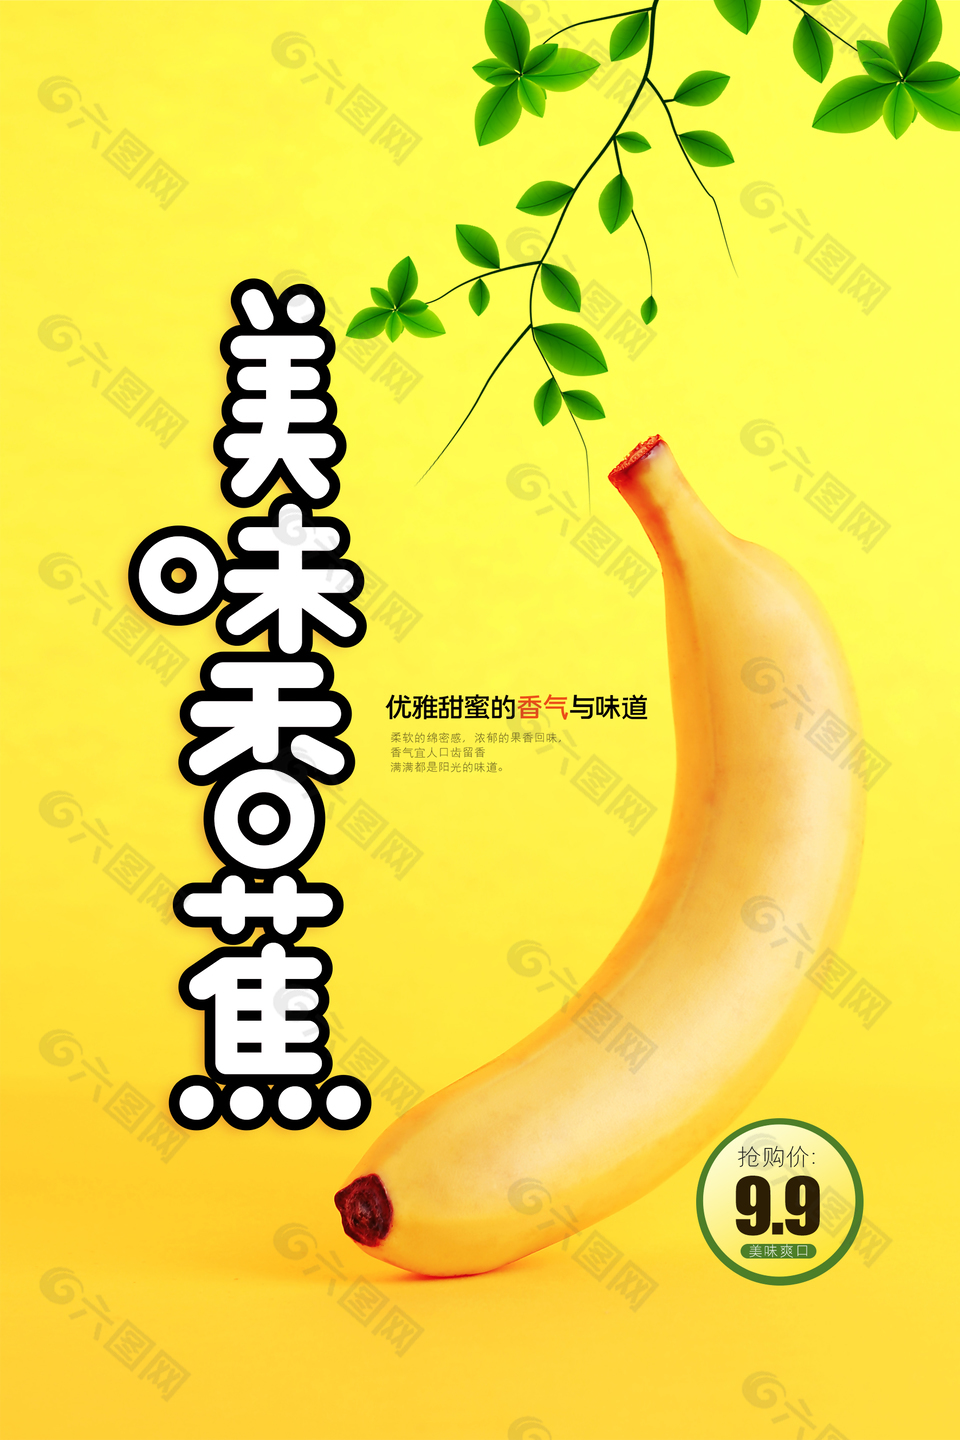 精品香蕉促销海报设计